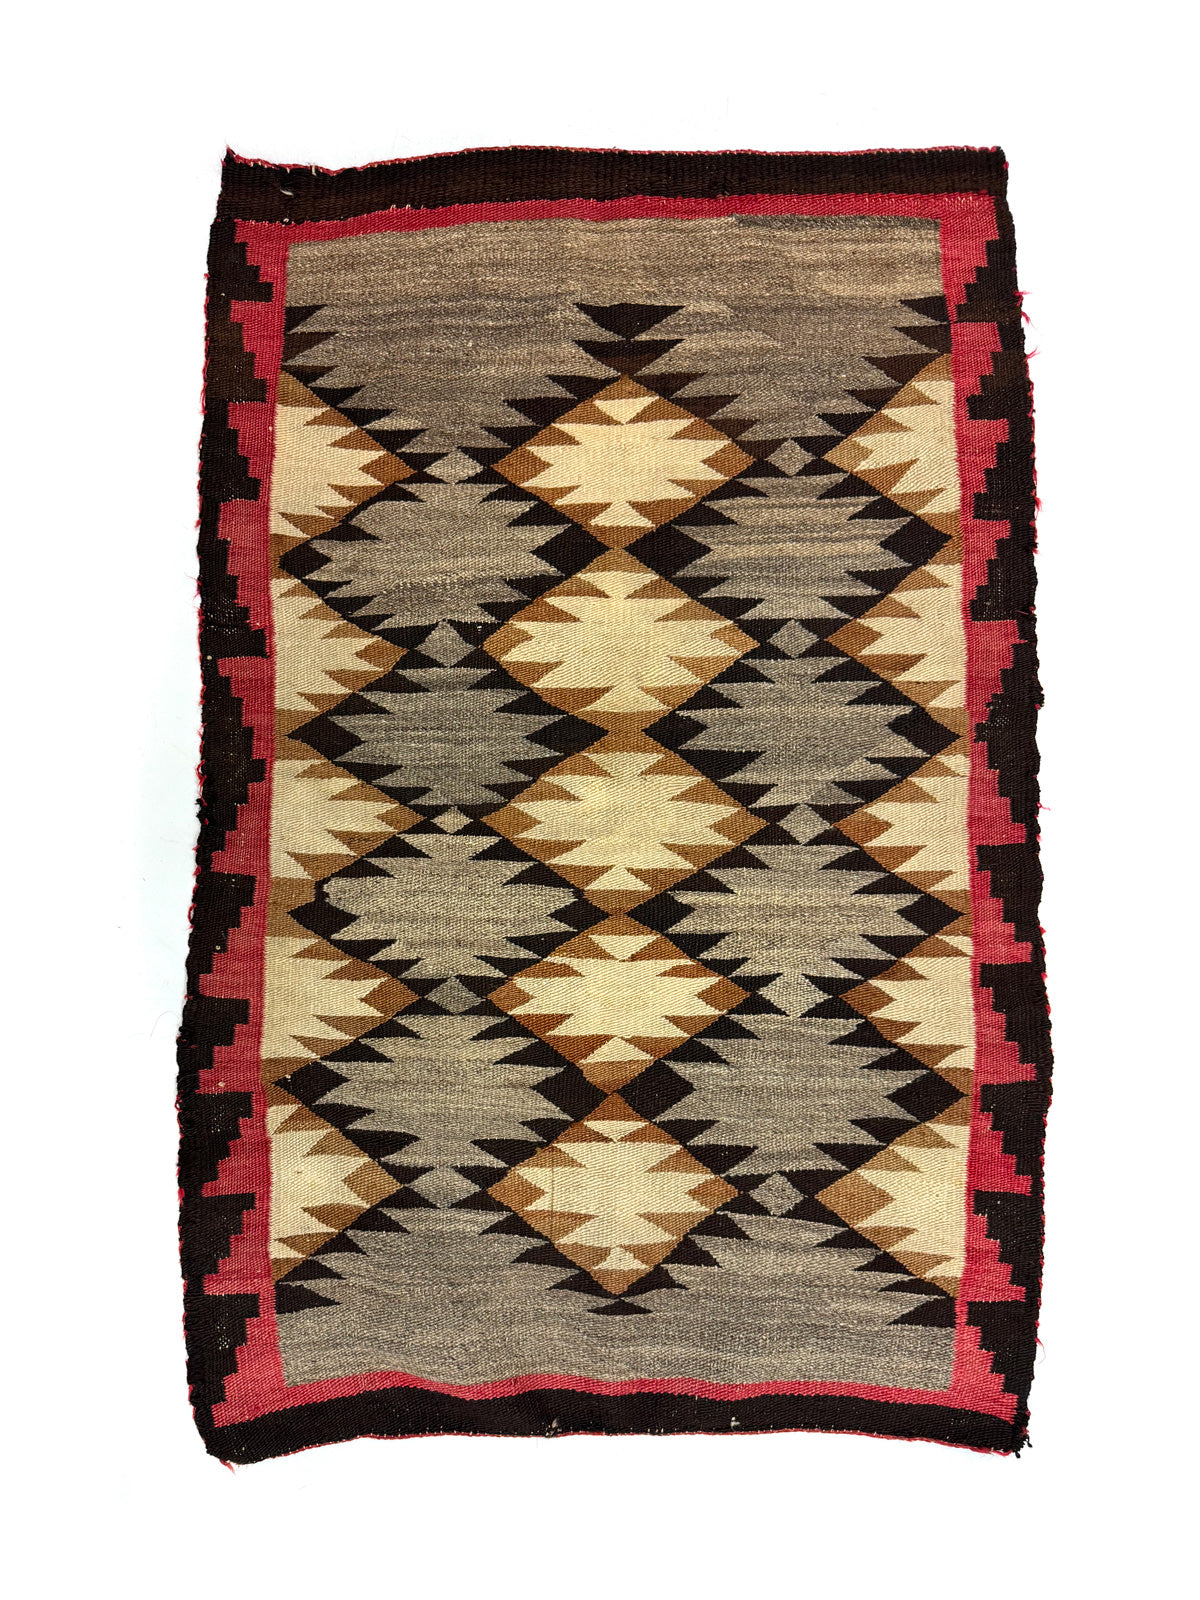 Navajo Red Mesa Rug c. 1915, 51.25" x 33" (T90537-1123-007)